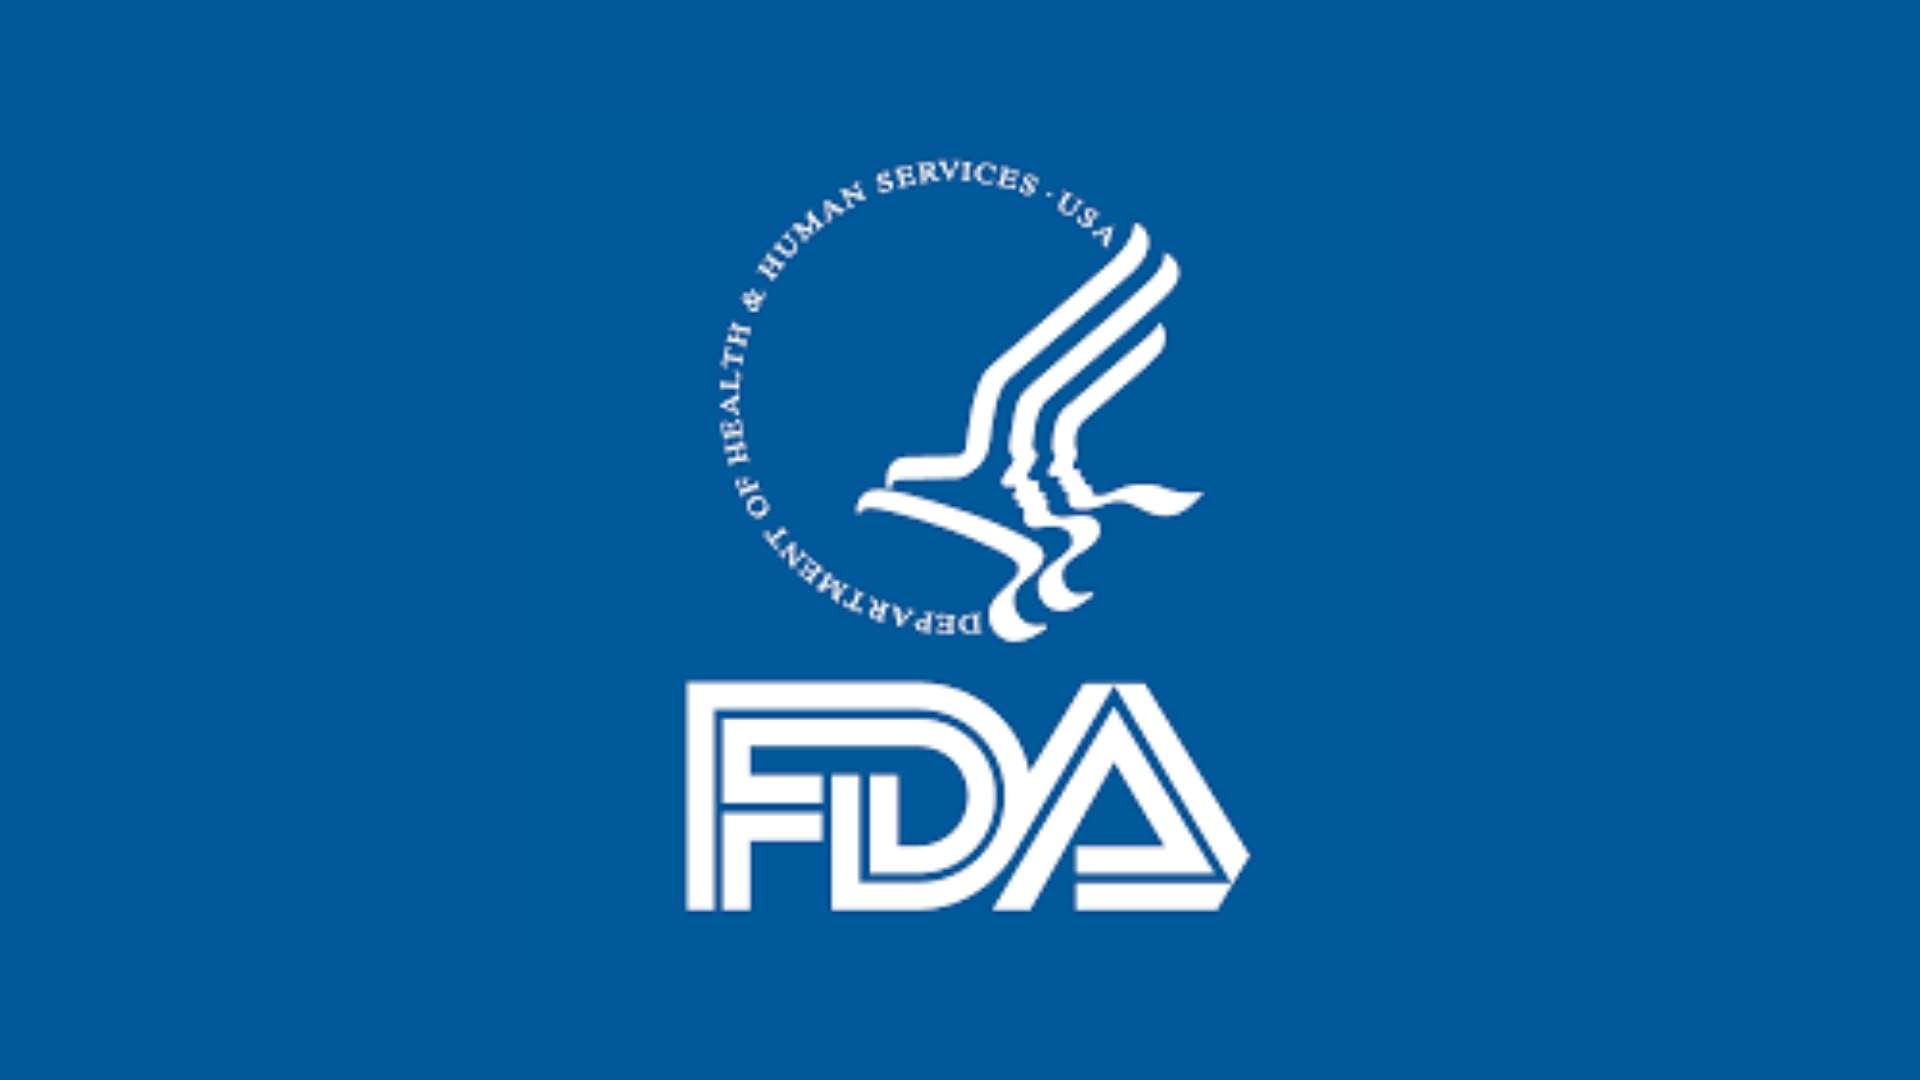 הנחיות מתוקנות של ה-FDA בנושא בדיקות COVID-19: שינויים